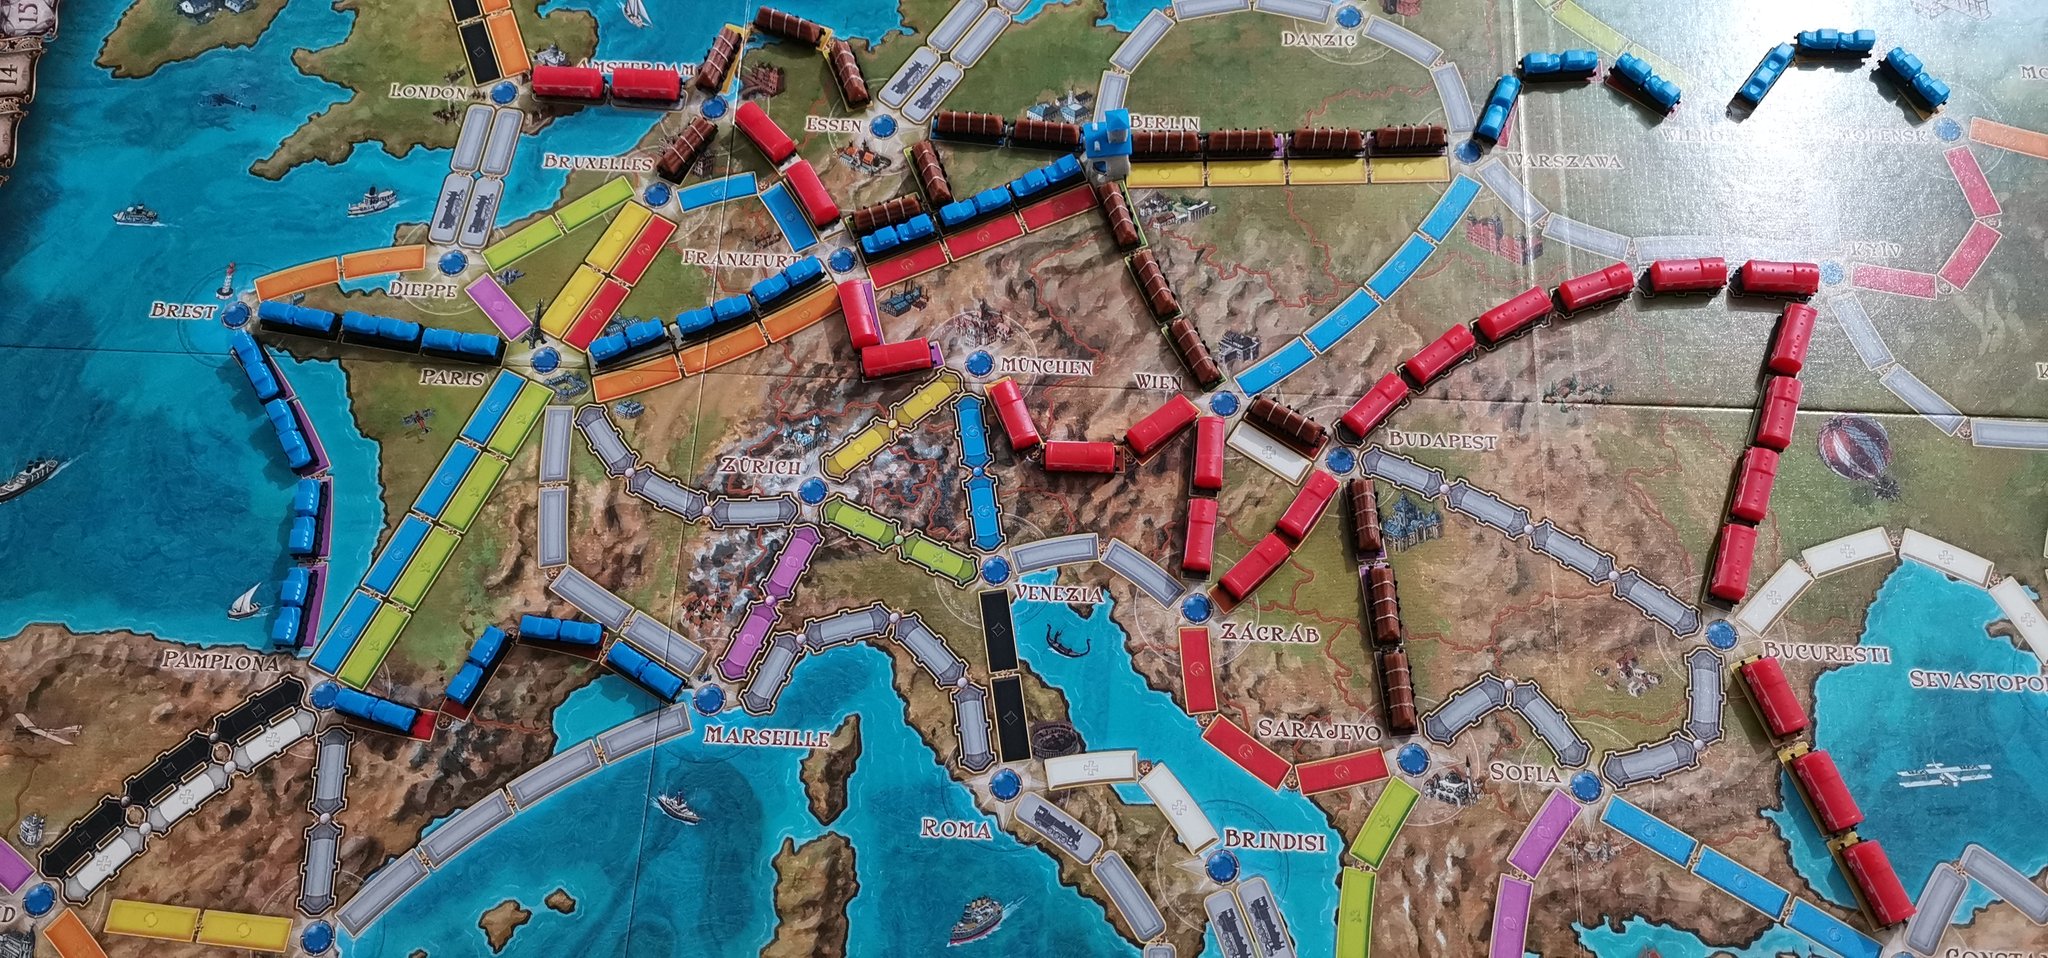 Les Aventuriers du Rail Berlin - C'est le jeu